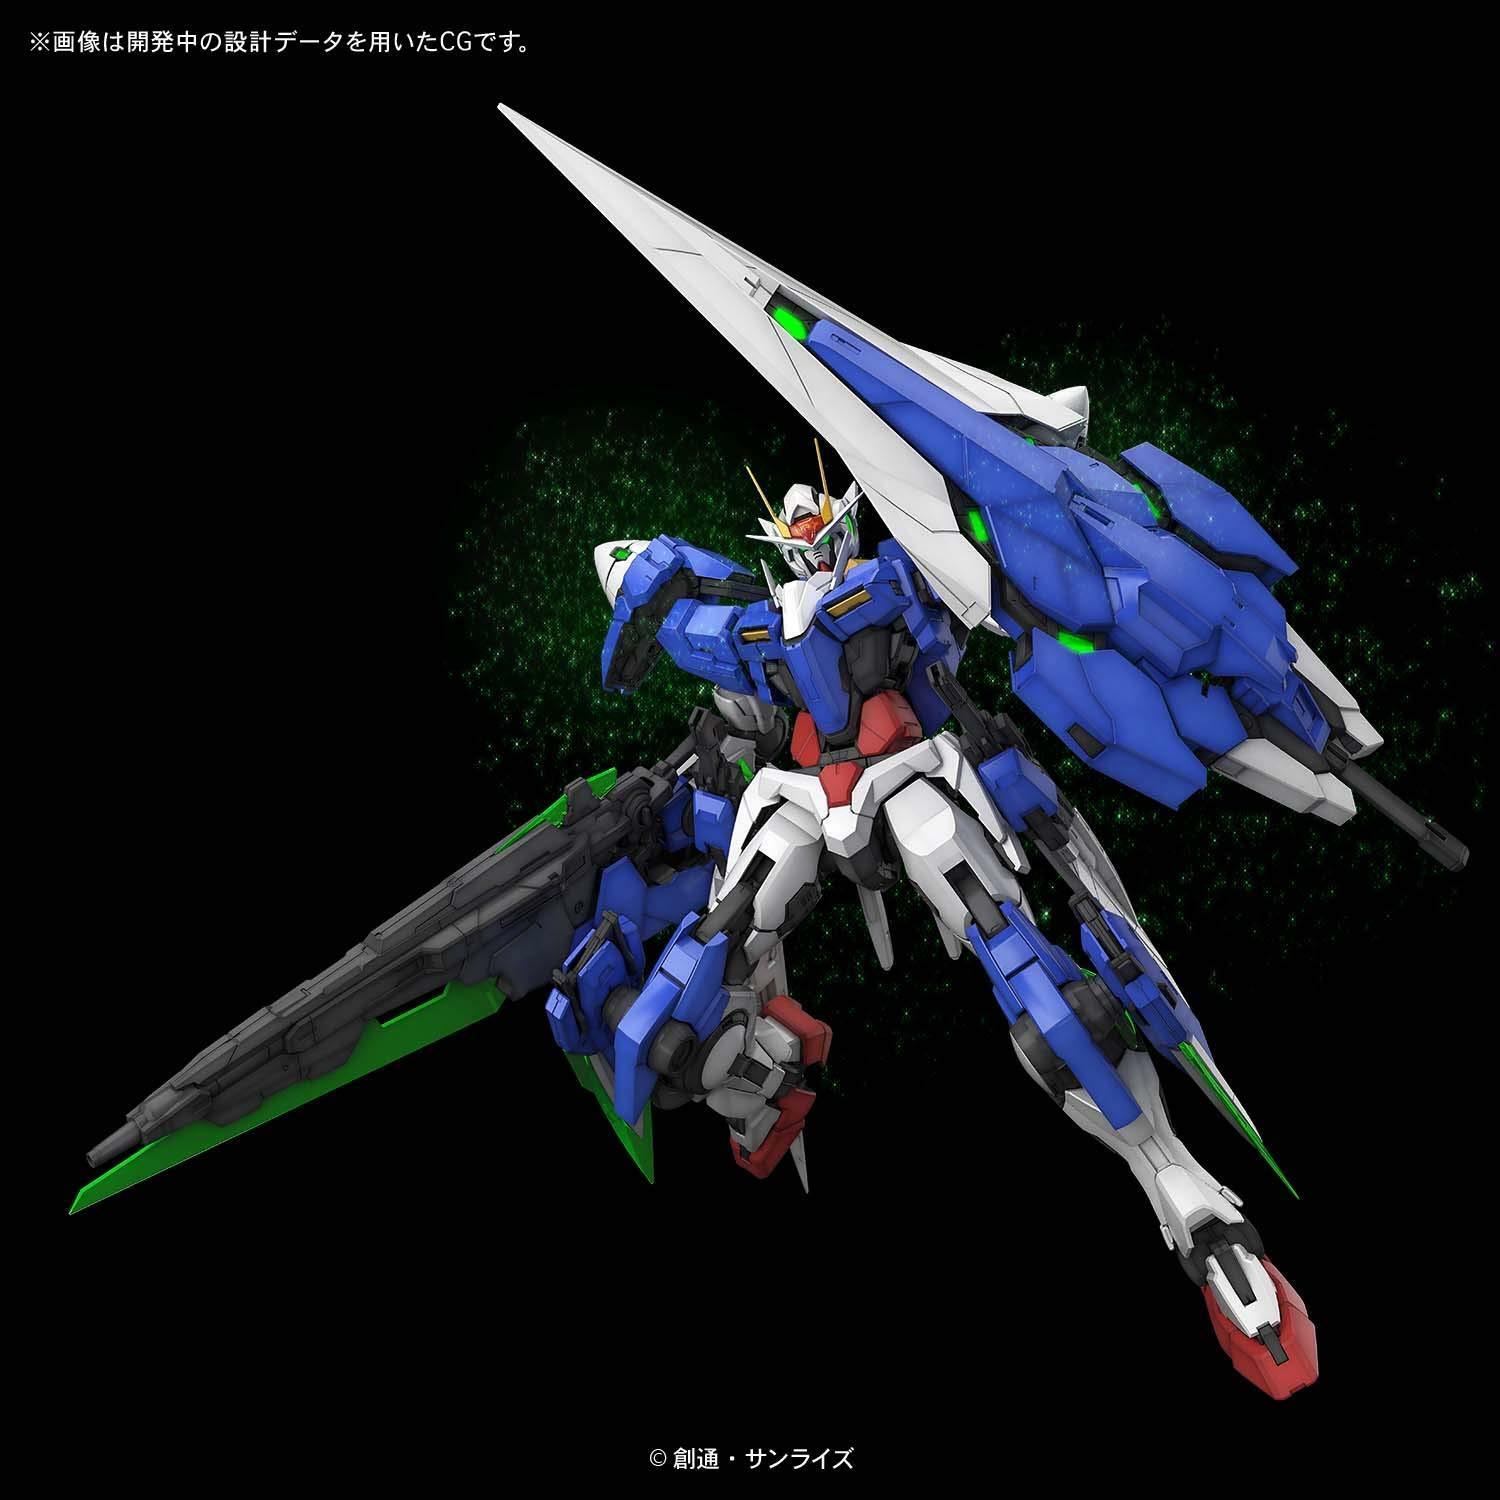 PG - GN-0000/7S 00 Gundam Seven Sword